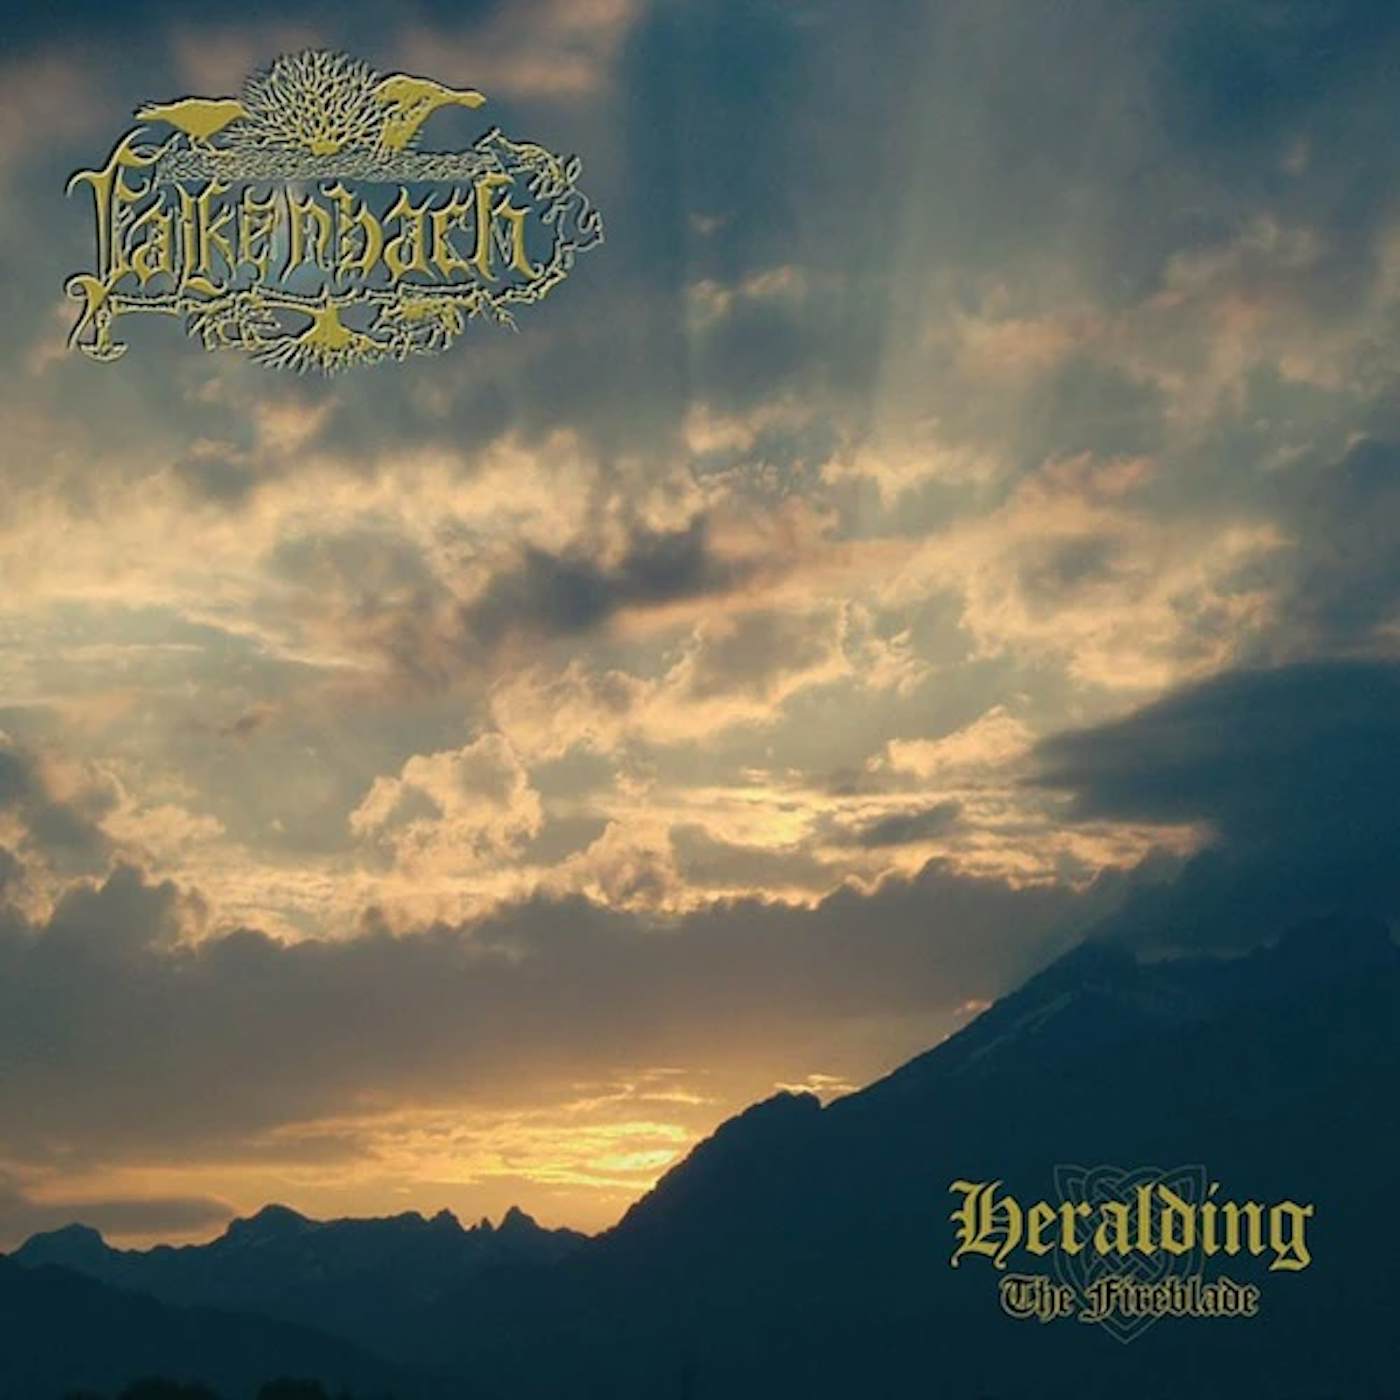 Falkenbach Heralding - The Fireblade Vinyl Record